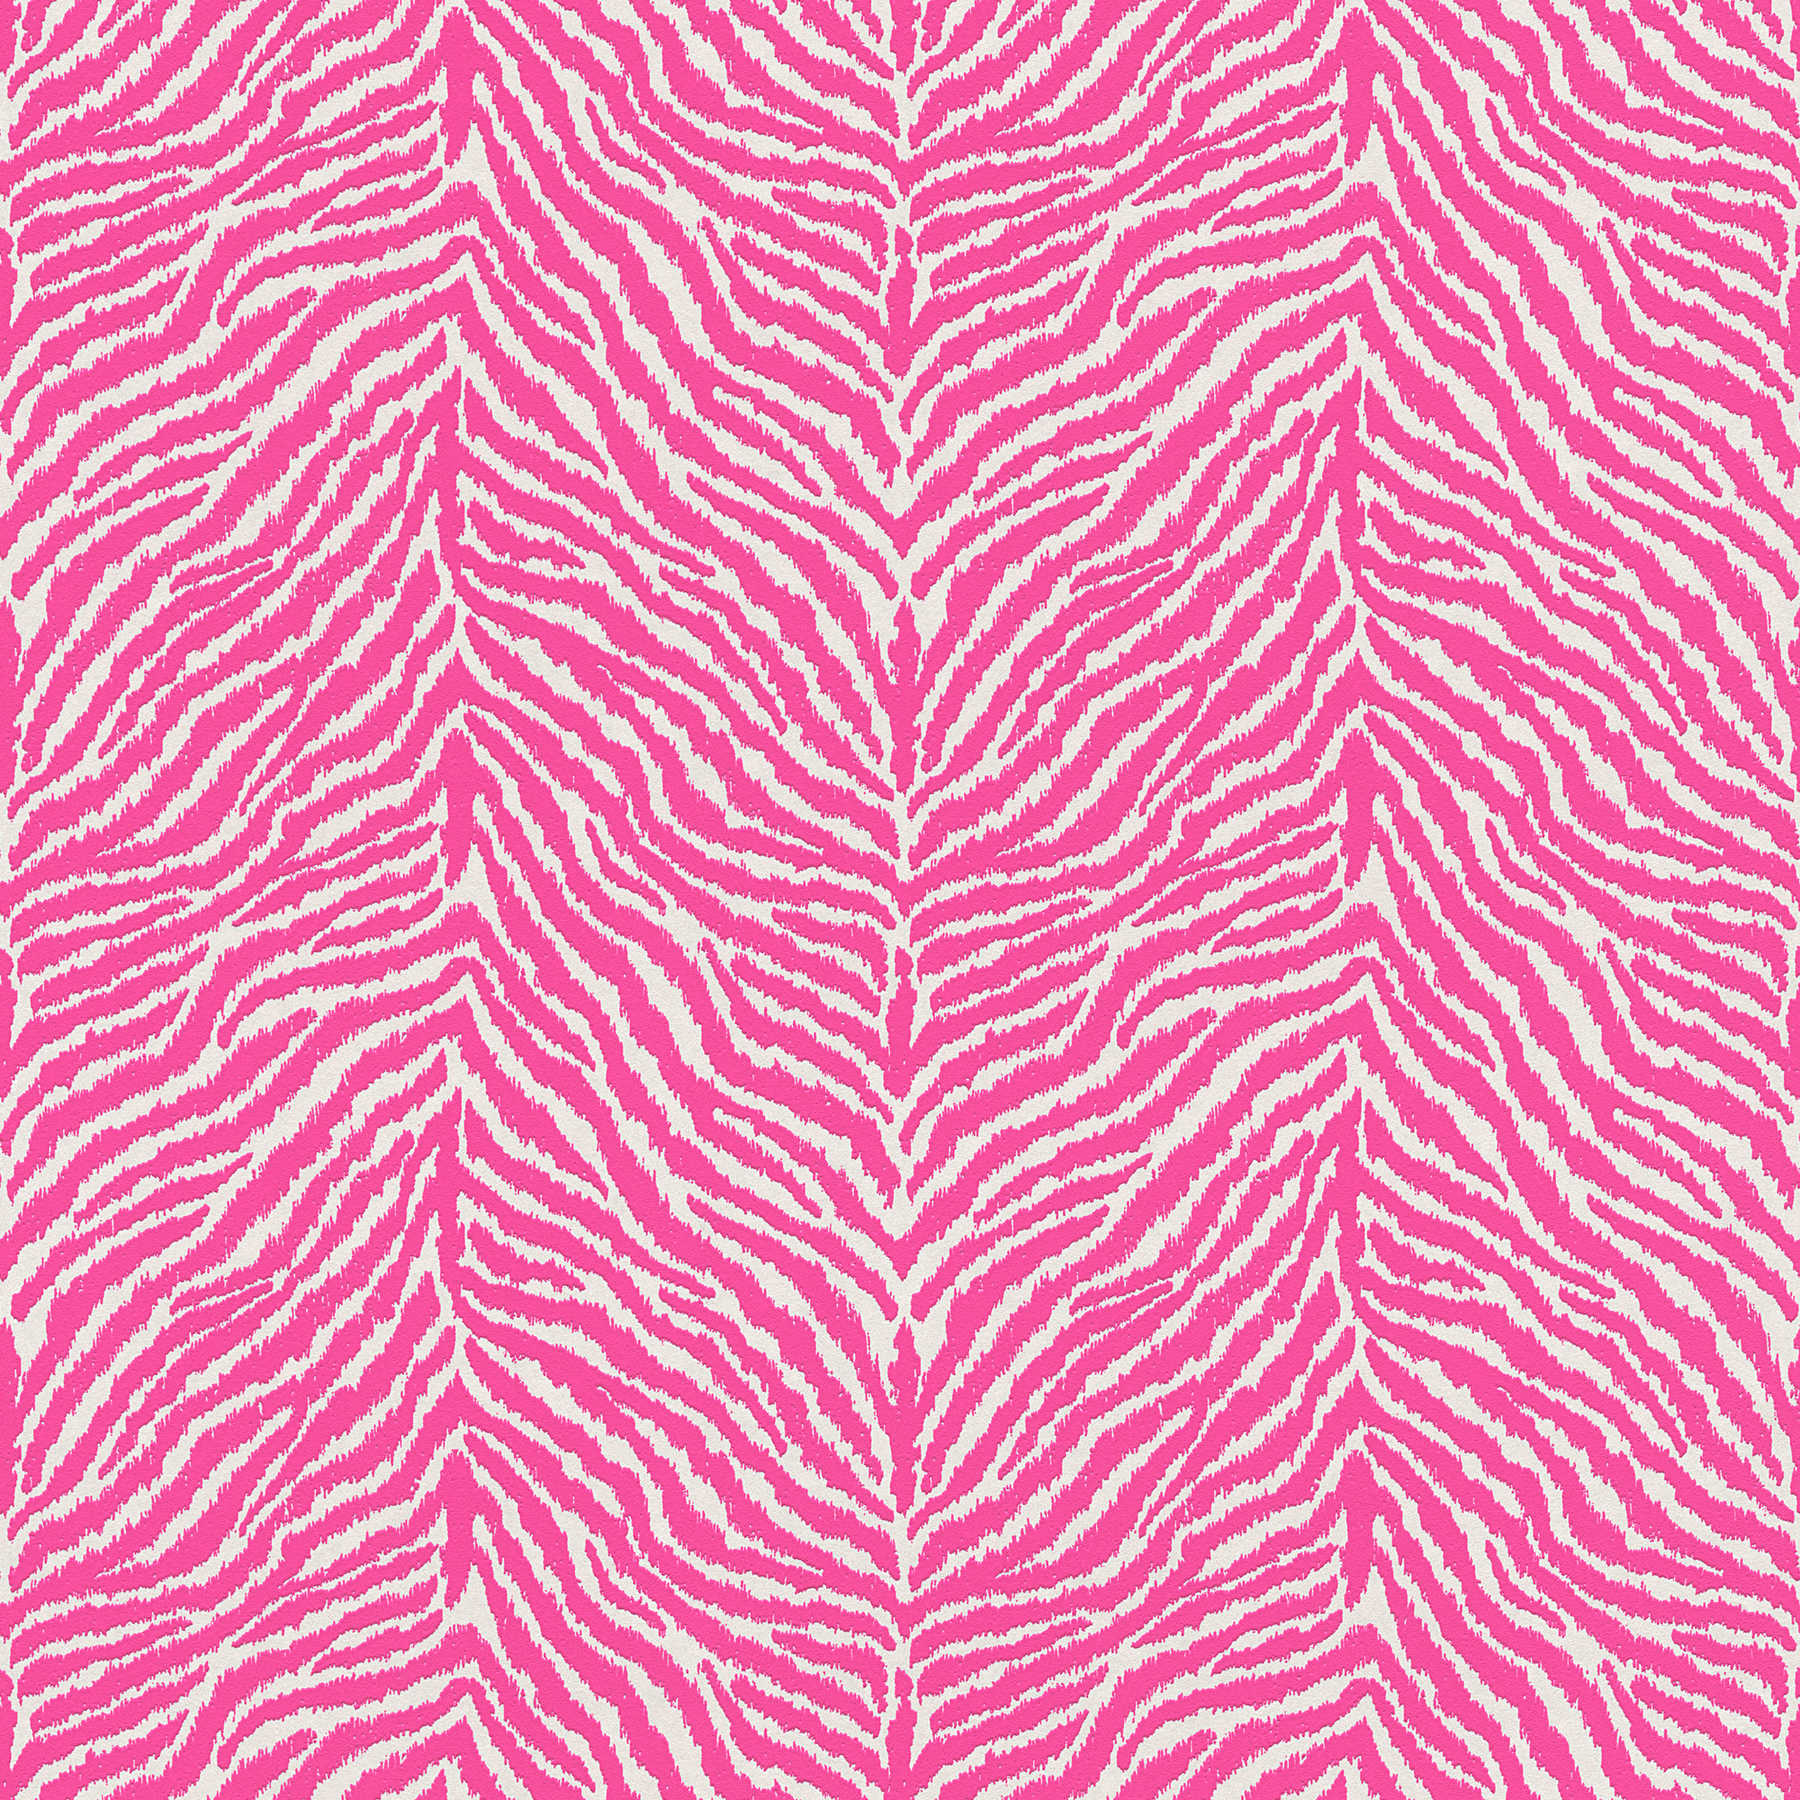         Animal print non-woven wallpaper zebra pattern - pink, white
    